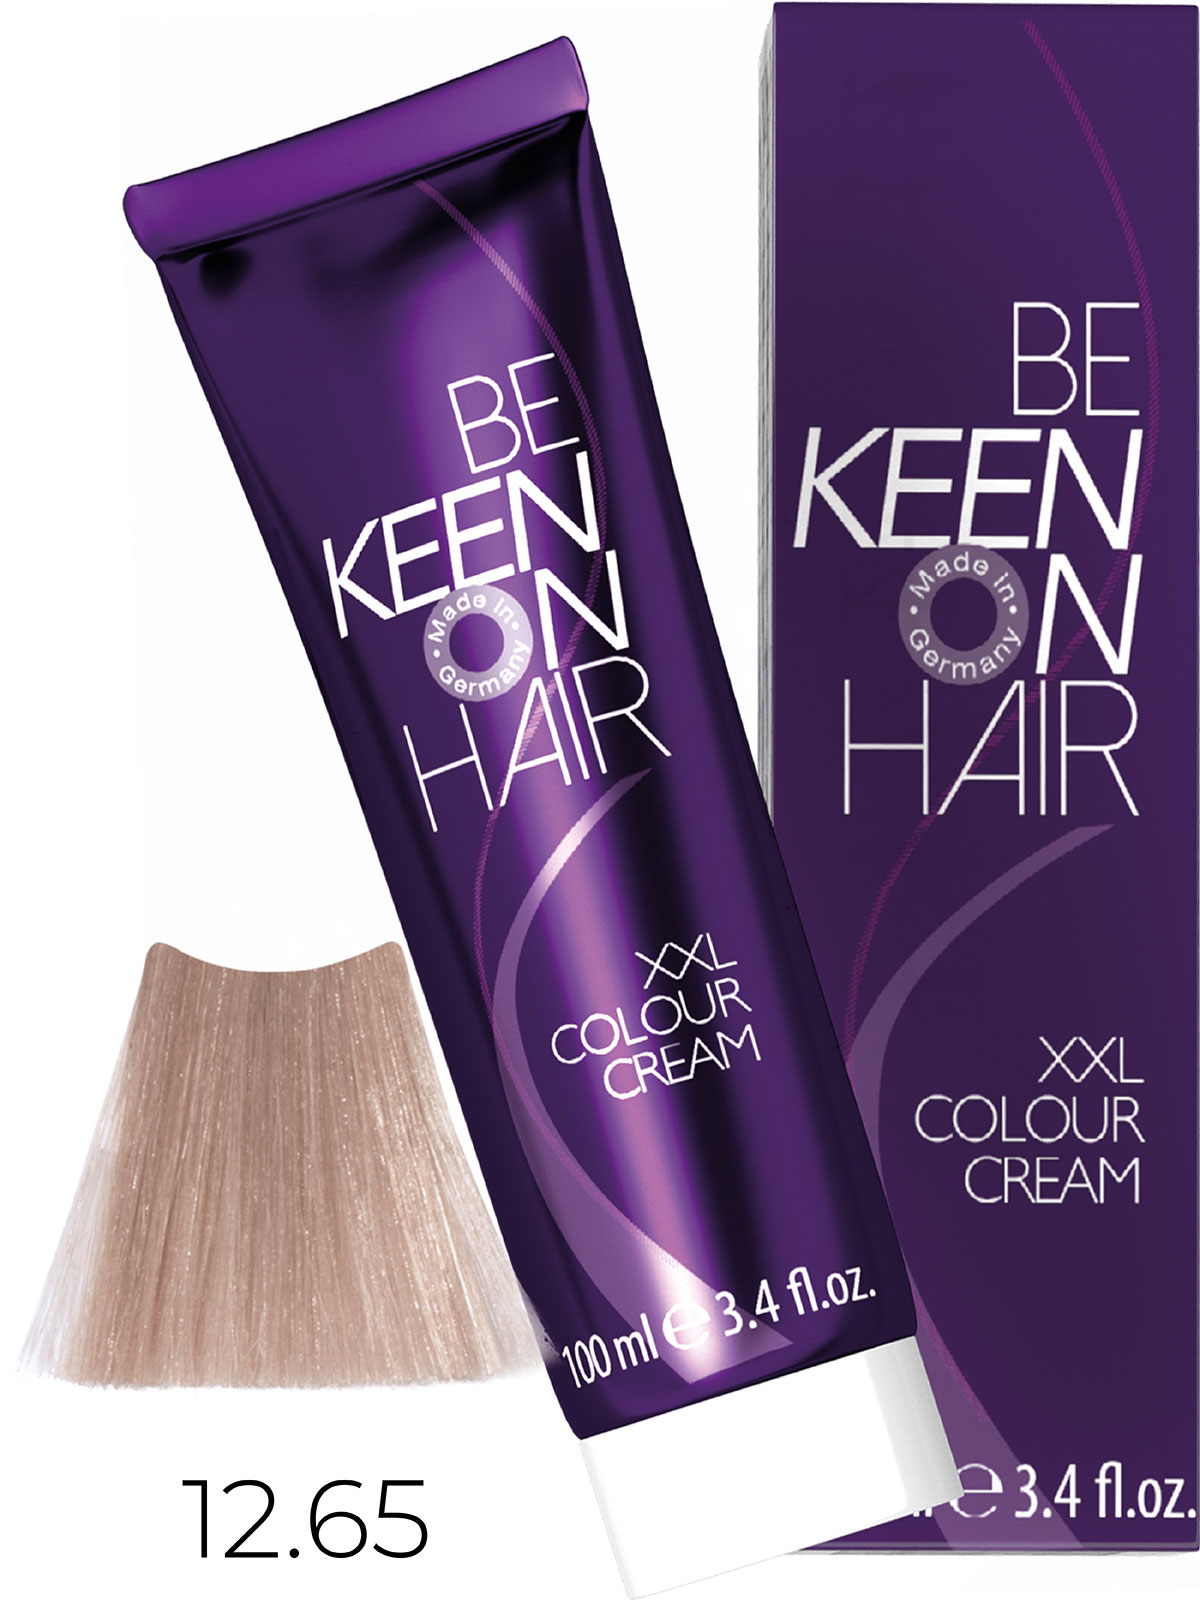 Keen крем краска colour cream xxl 12.65 платиновый фиолетово красный блондин 100 мл БС